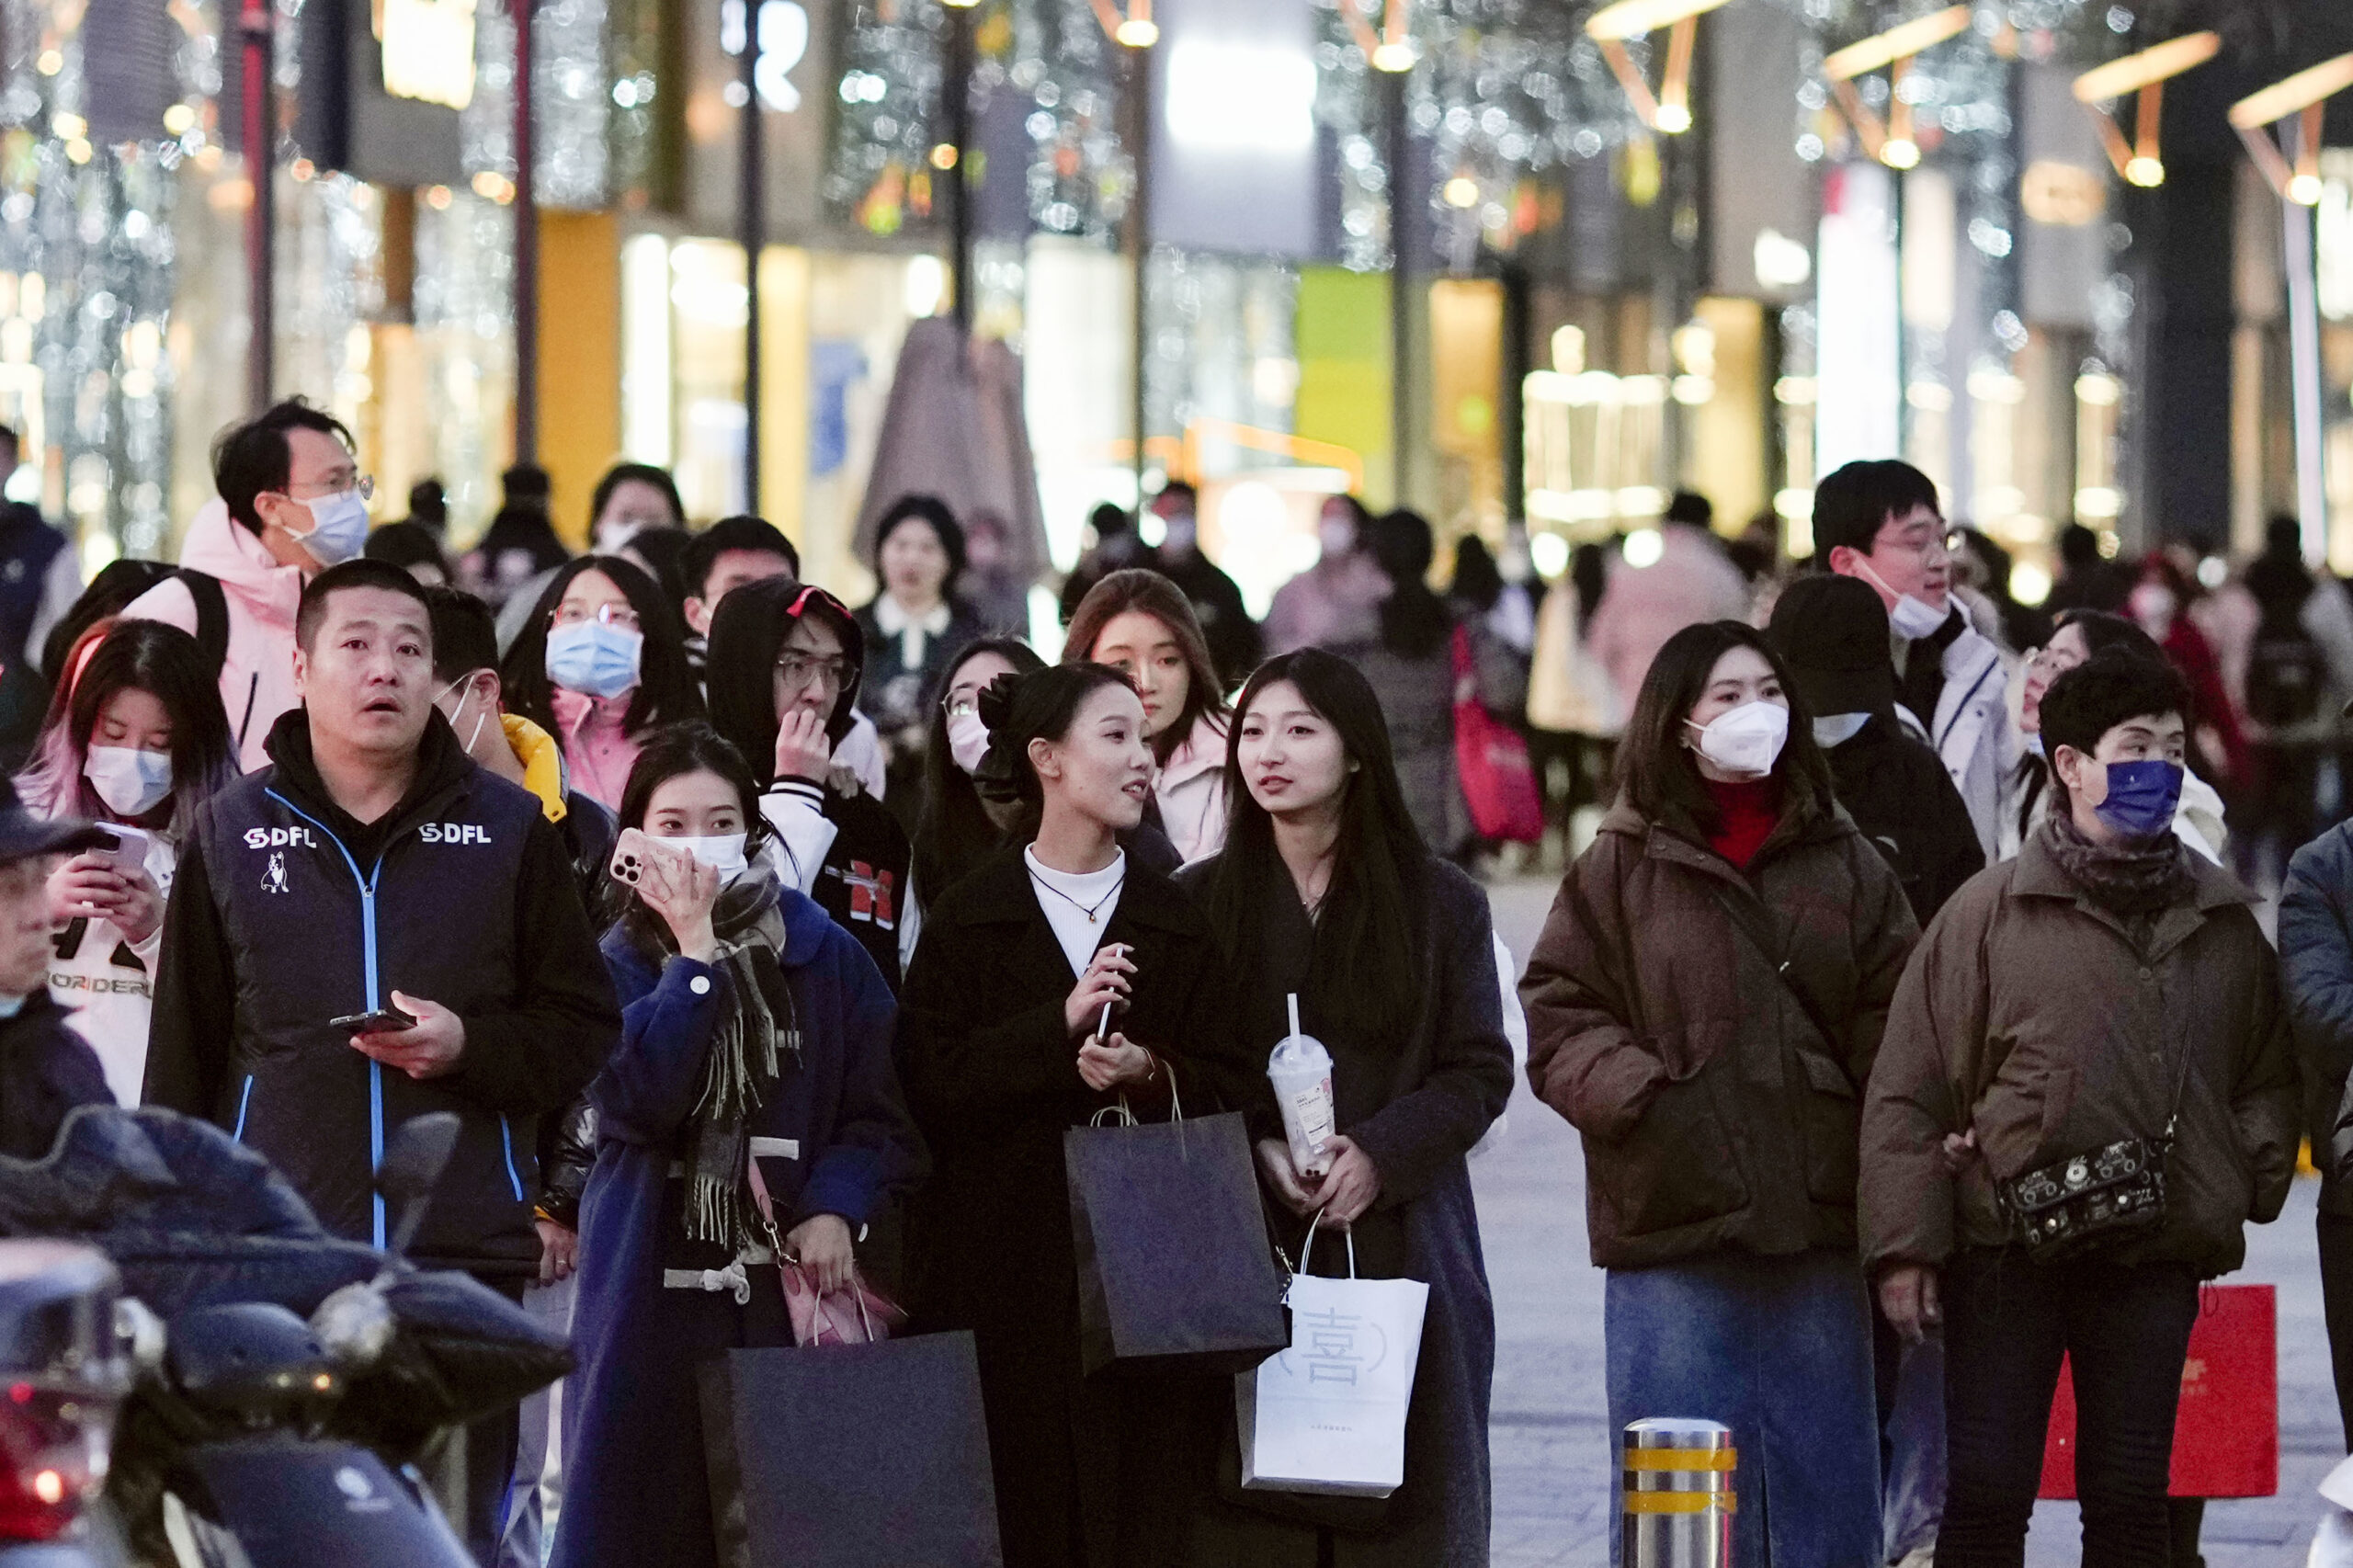 中国家計所得調査（CHIP）は雇用者の賃金や家計の消費支出などを詳細に調べる。調査結果を基に所得格差や貧困問題に関する実証研究が可能だ。写真は大勢の人でにぎわう北京市内の繁華街（2023年2月、共同通信IMAGE LINK）